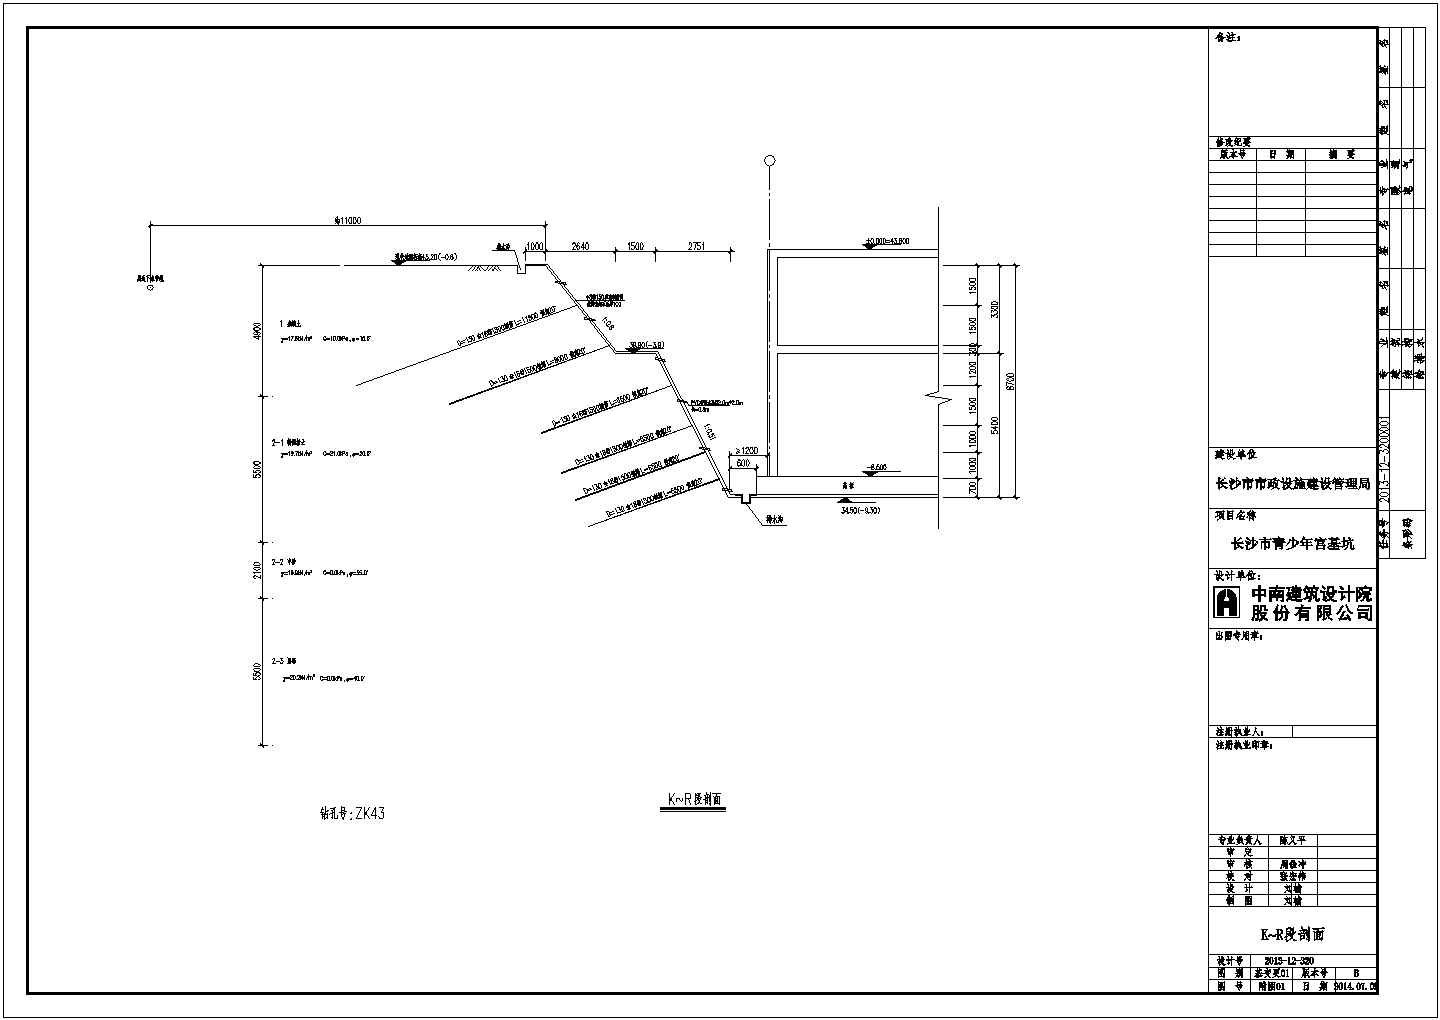 长沙市青少年宫建设项目基坑监测工程设计图纸